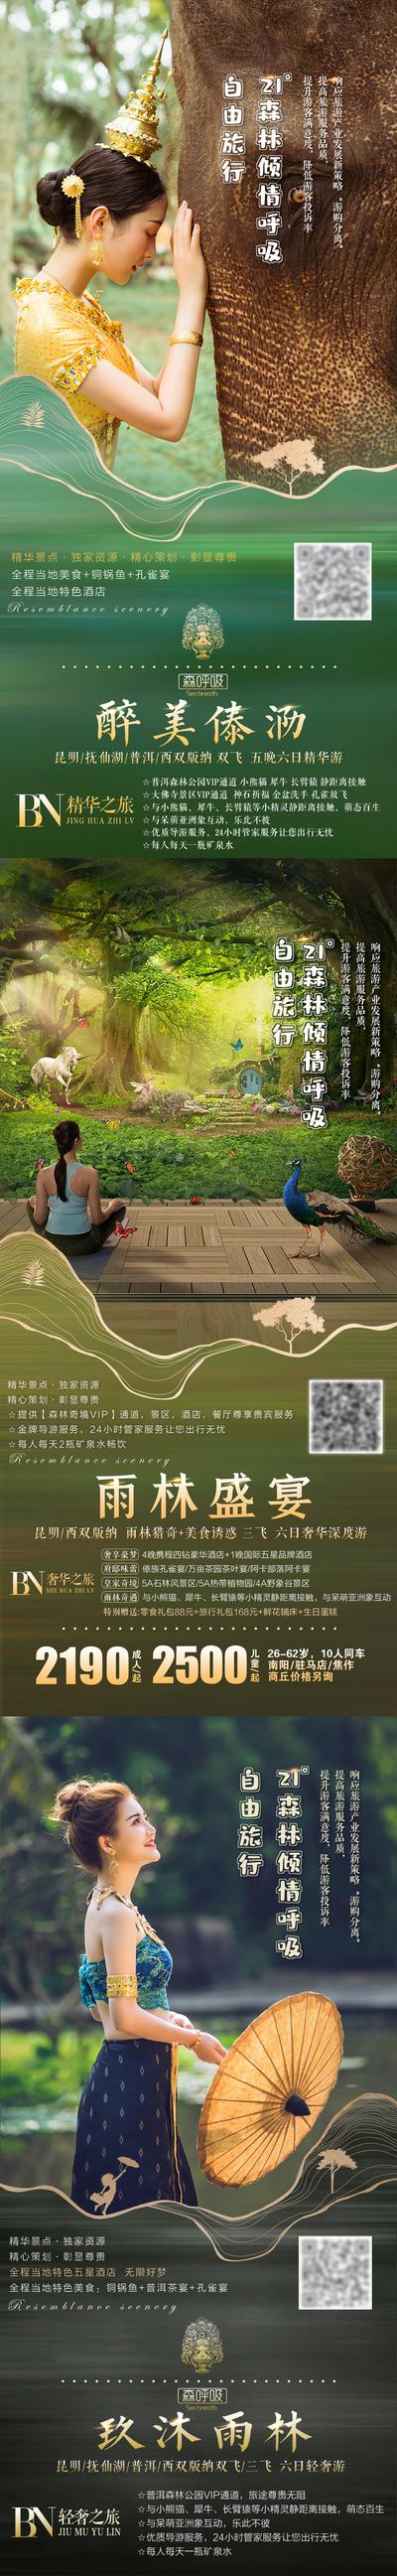 南门网 海报 旅游 云南 西双版纳 雨林 美景 系列